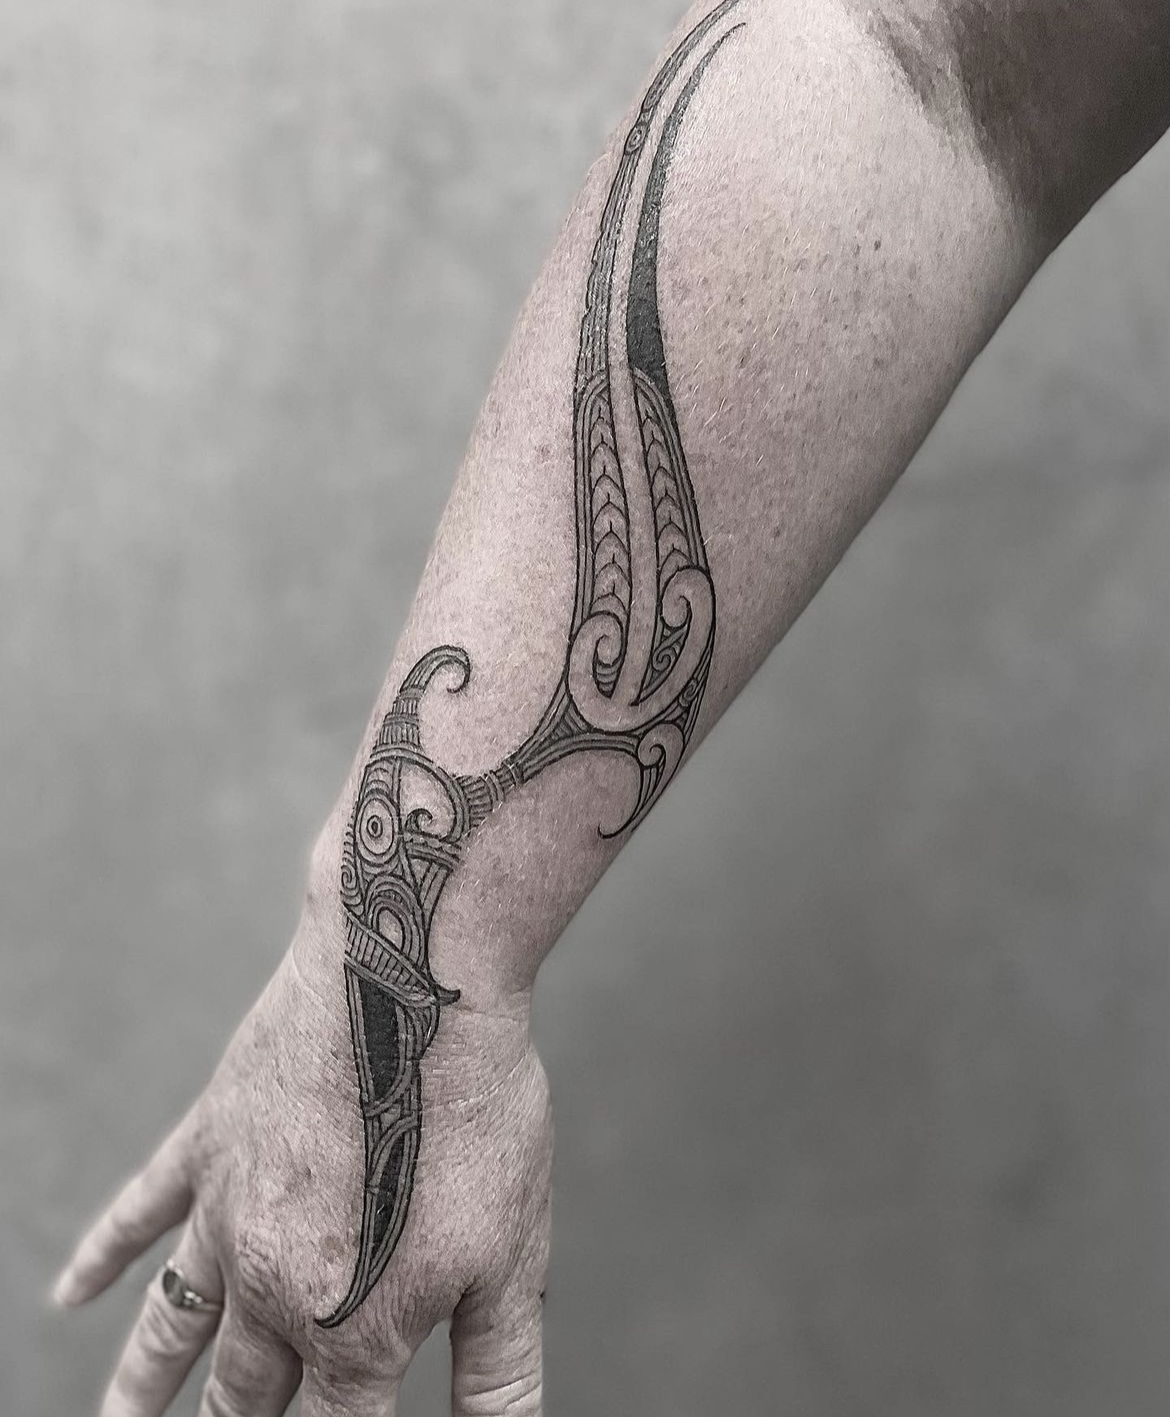 Forearm tattoo by Fi at Haven Tattoo Christchurch NZ : r/tattoos